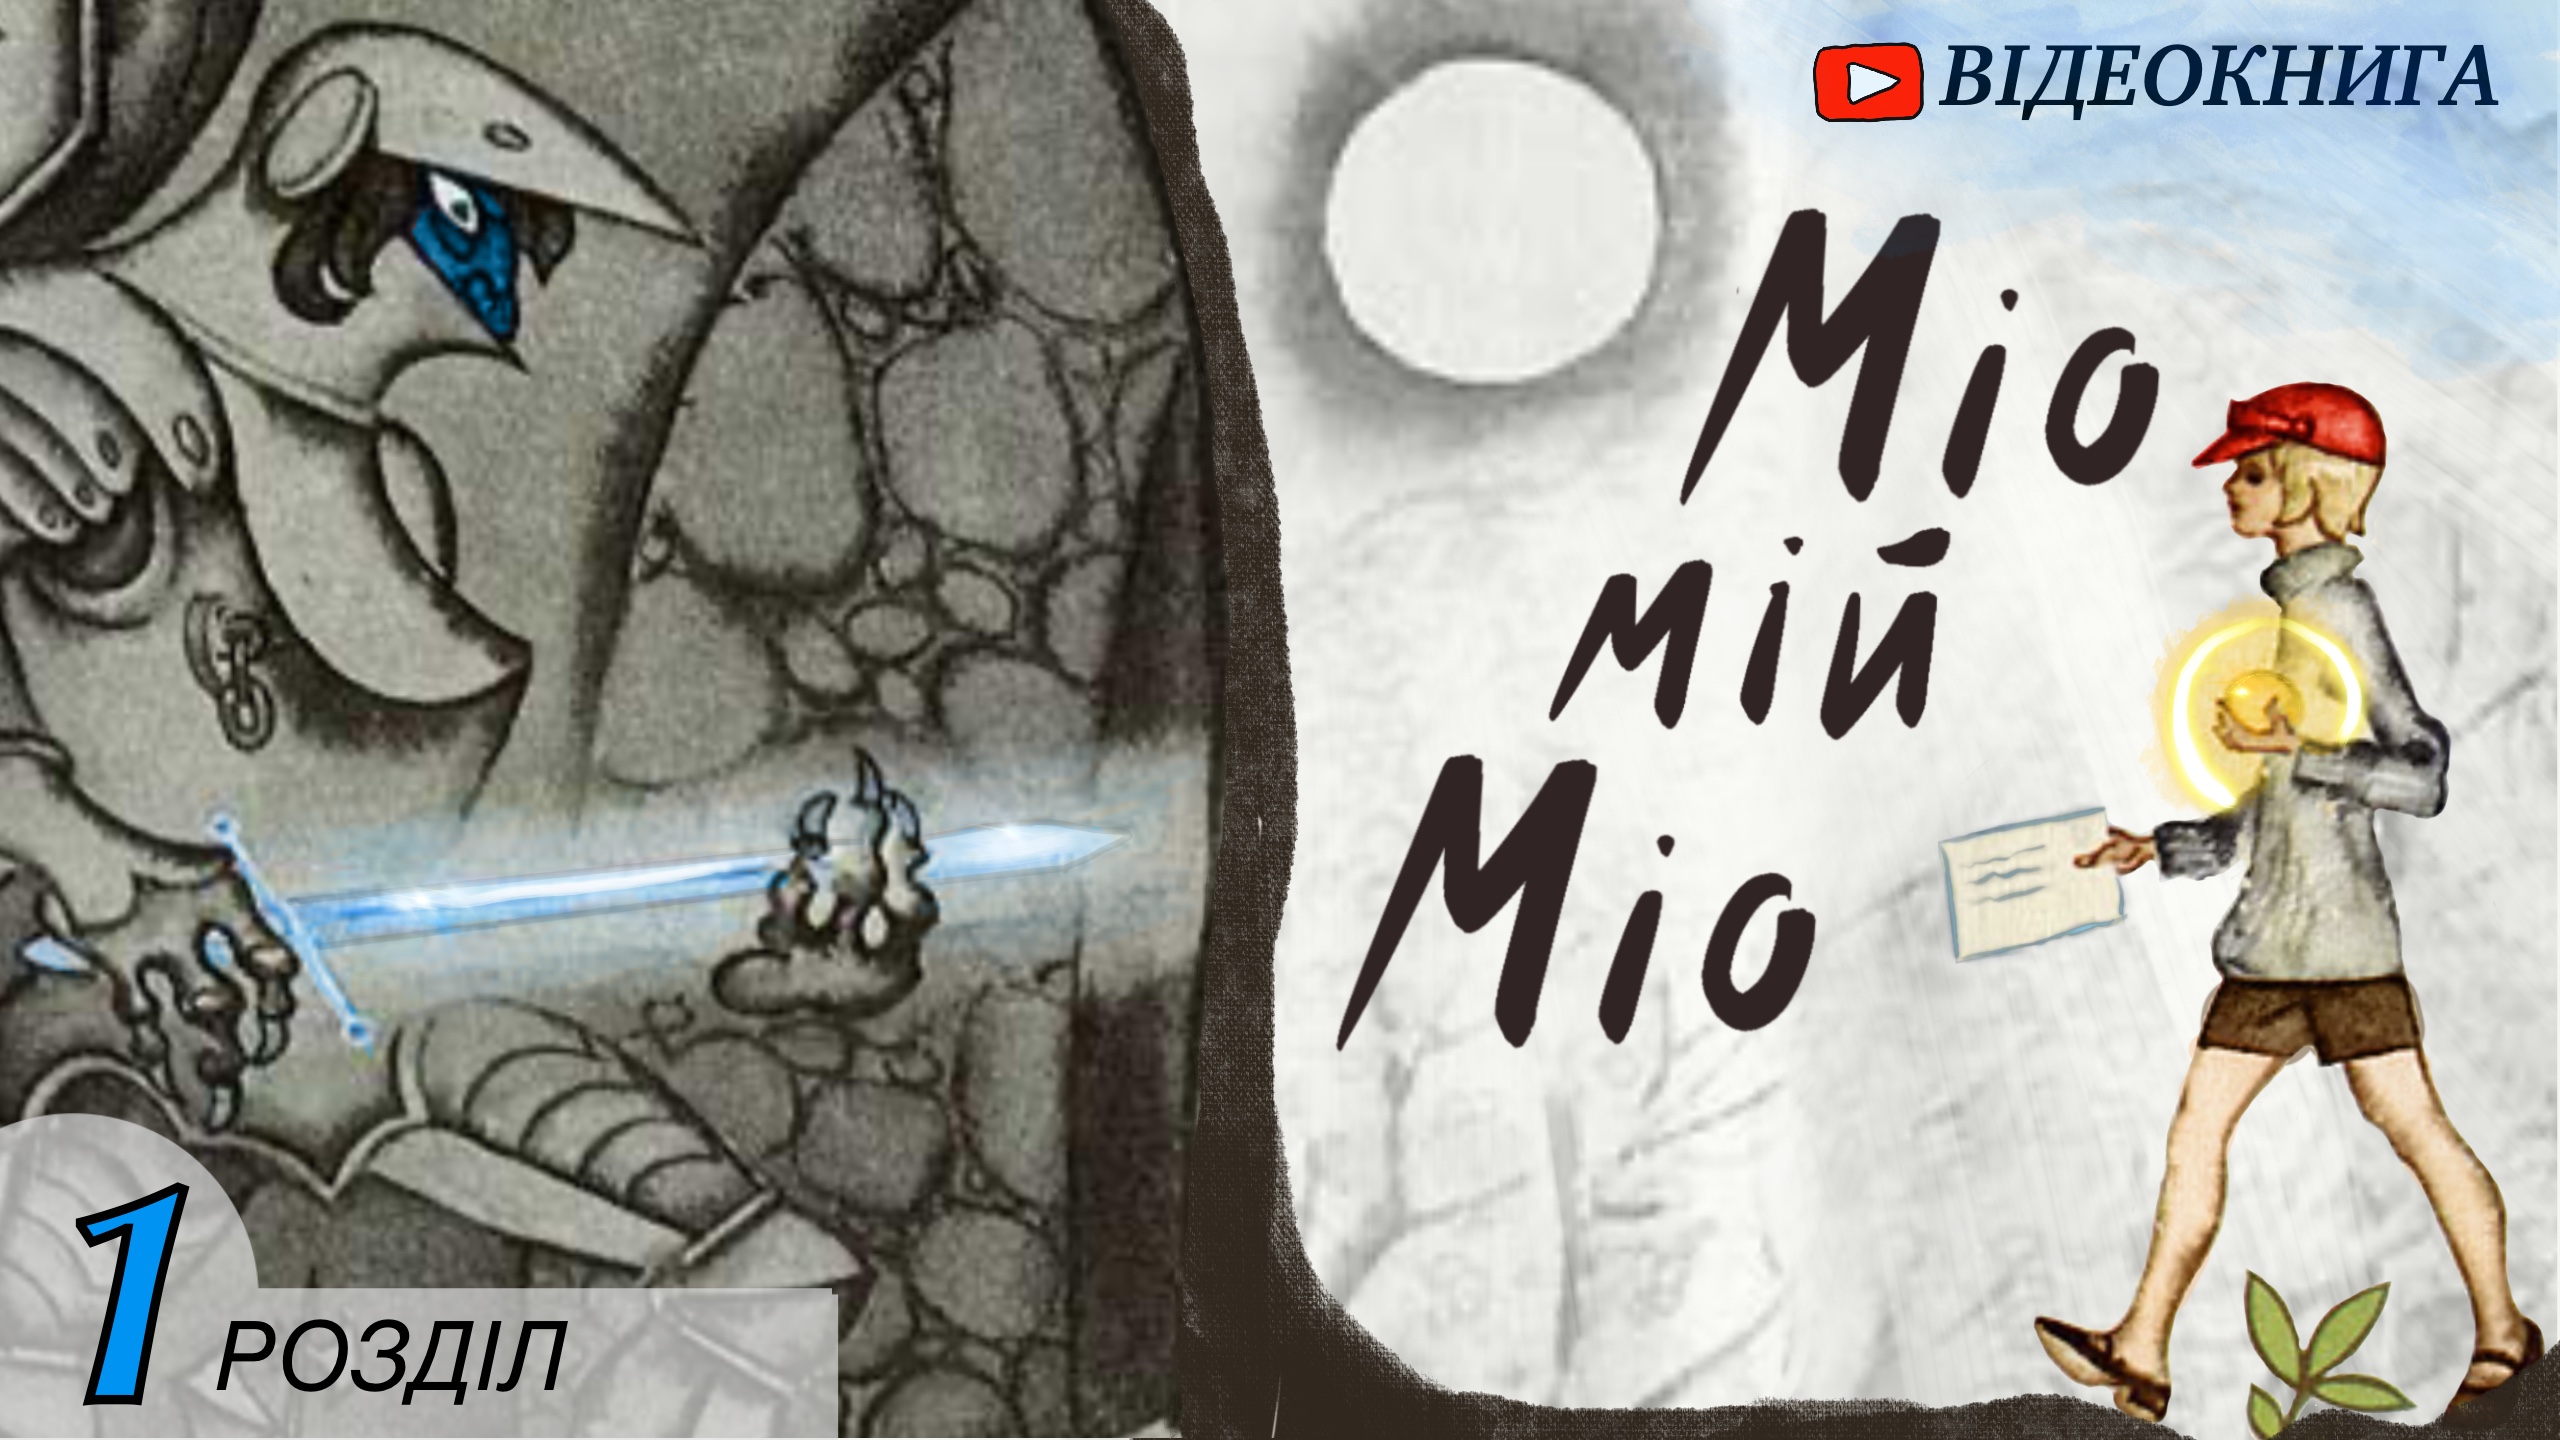 Обкладинка відеокниги  «Міо, мій Міо»